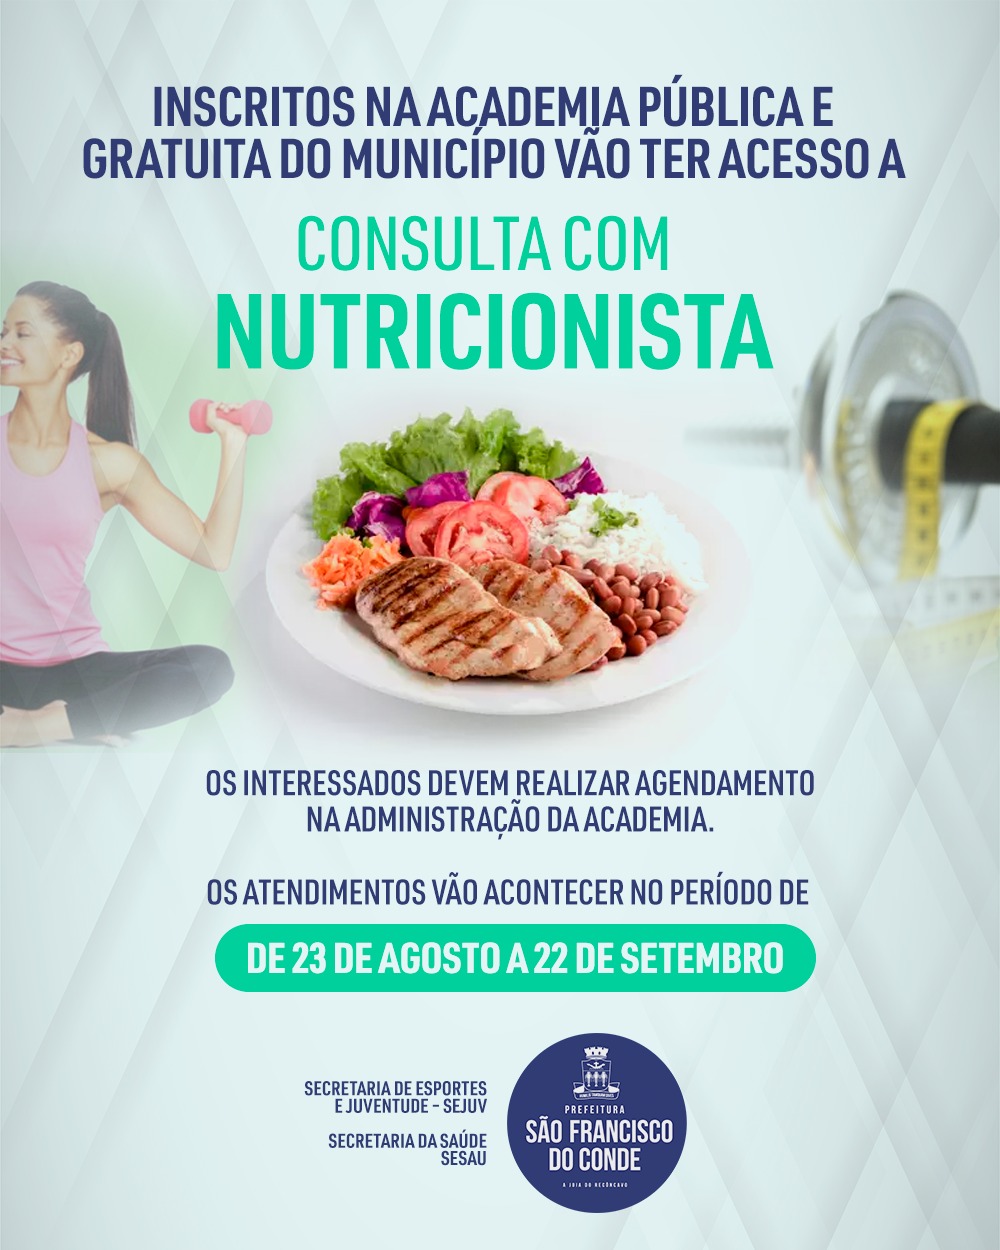 Inscritos na Academia Pública e gratuita do município vão ter acesso a consulta com nutricionista